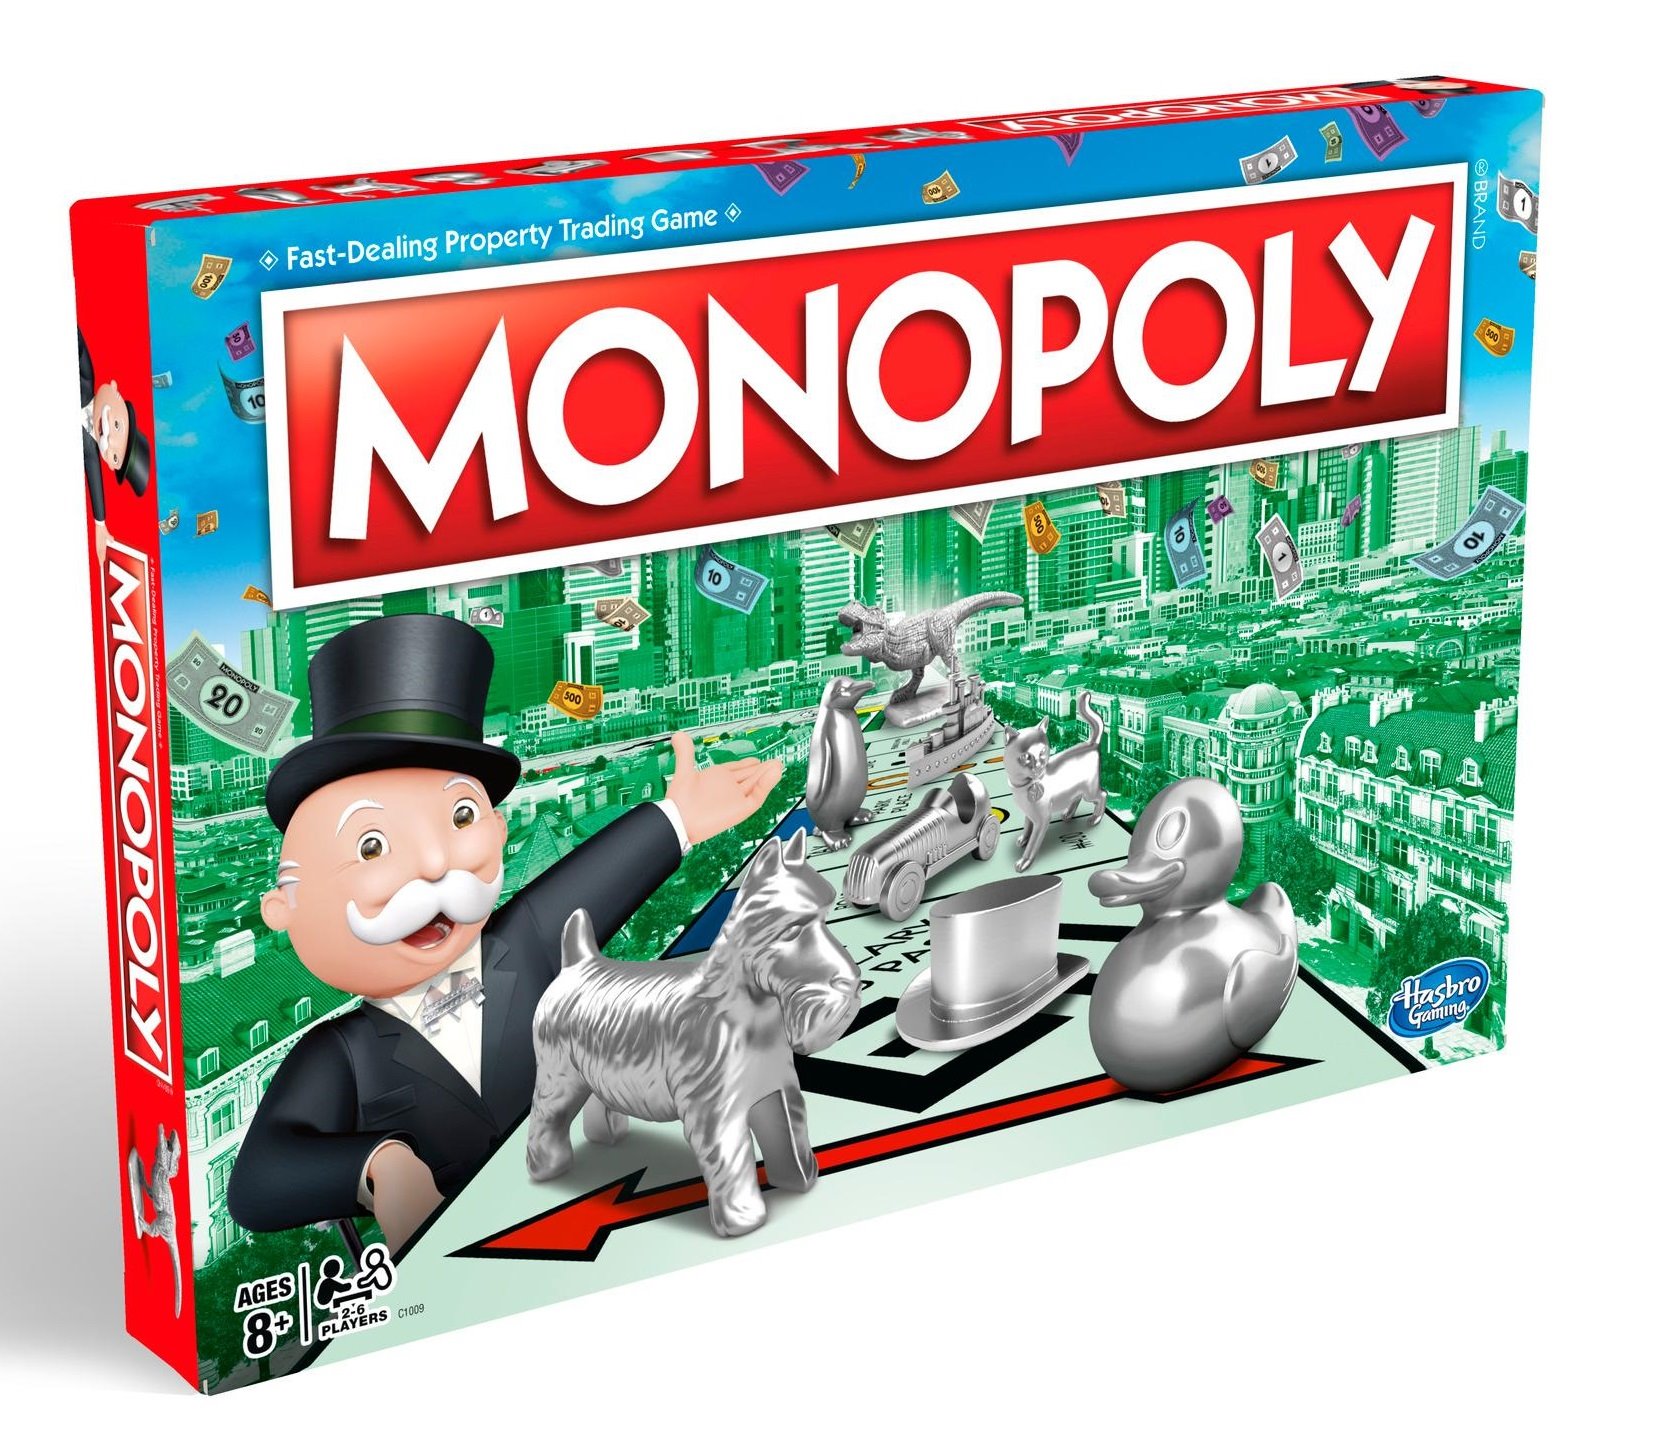 Игра монополия hasbro. Настольная игра Monopoly классическая обновленная c1009. Настольная игра Hasbro Monopoly. Настольная игра Hasbro Monopoly классическая обновленная. Монополия Monopoly Хасбро.